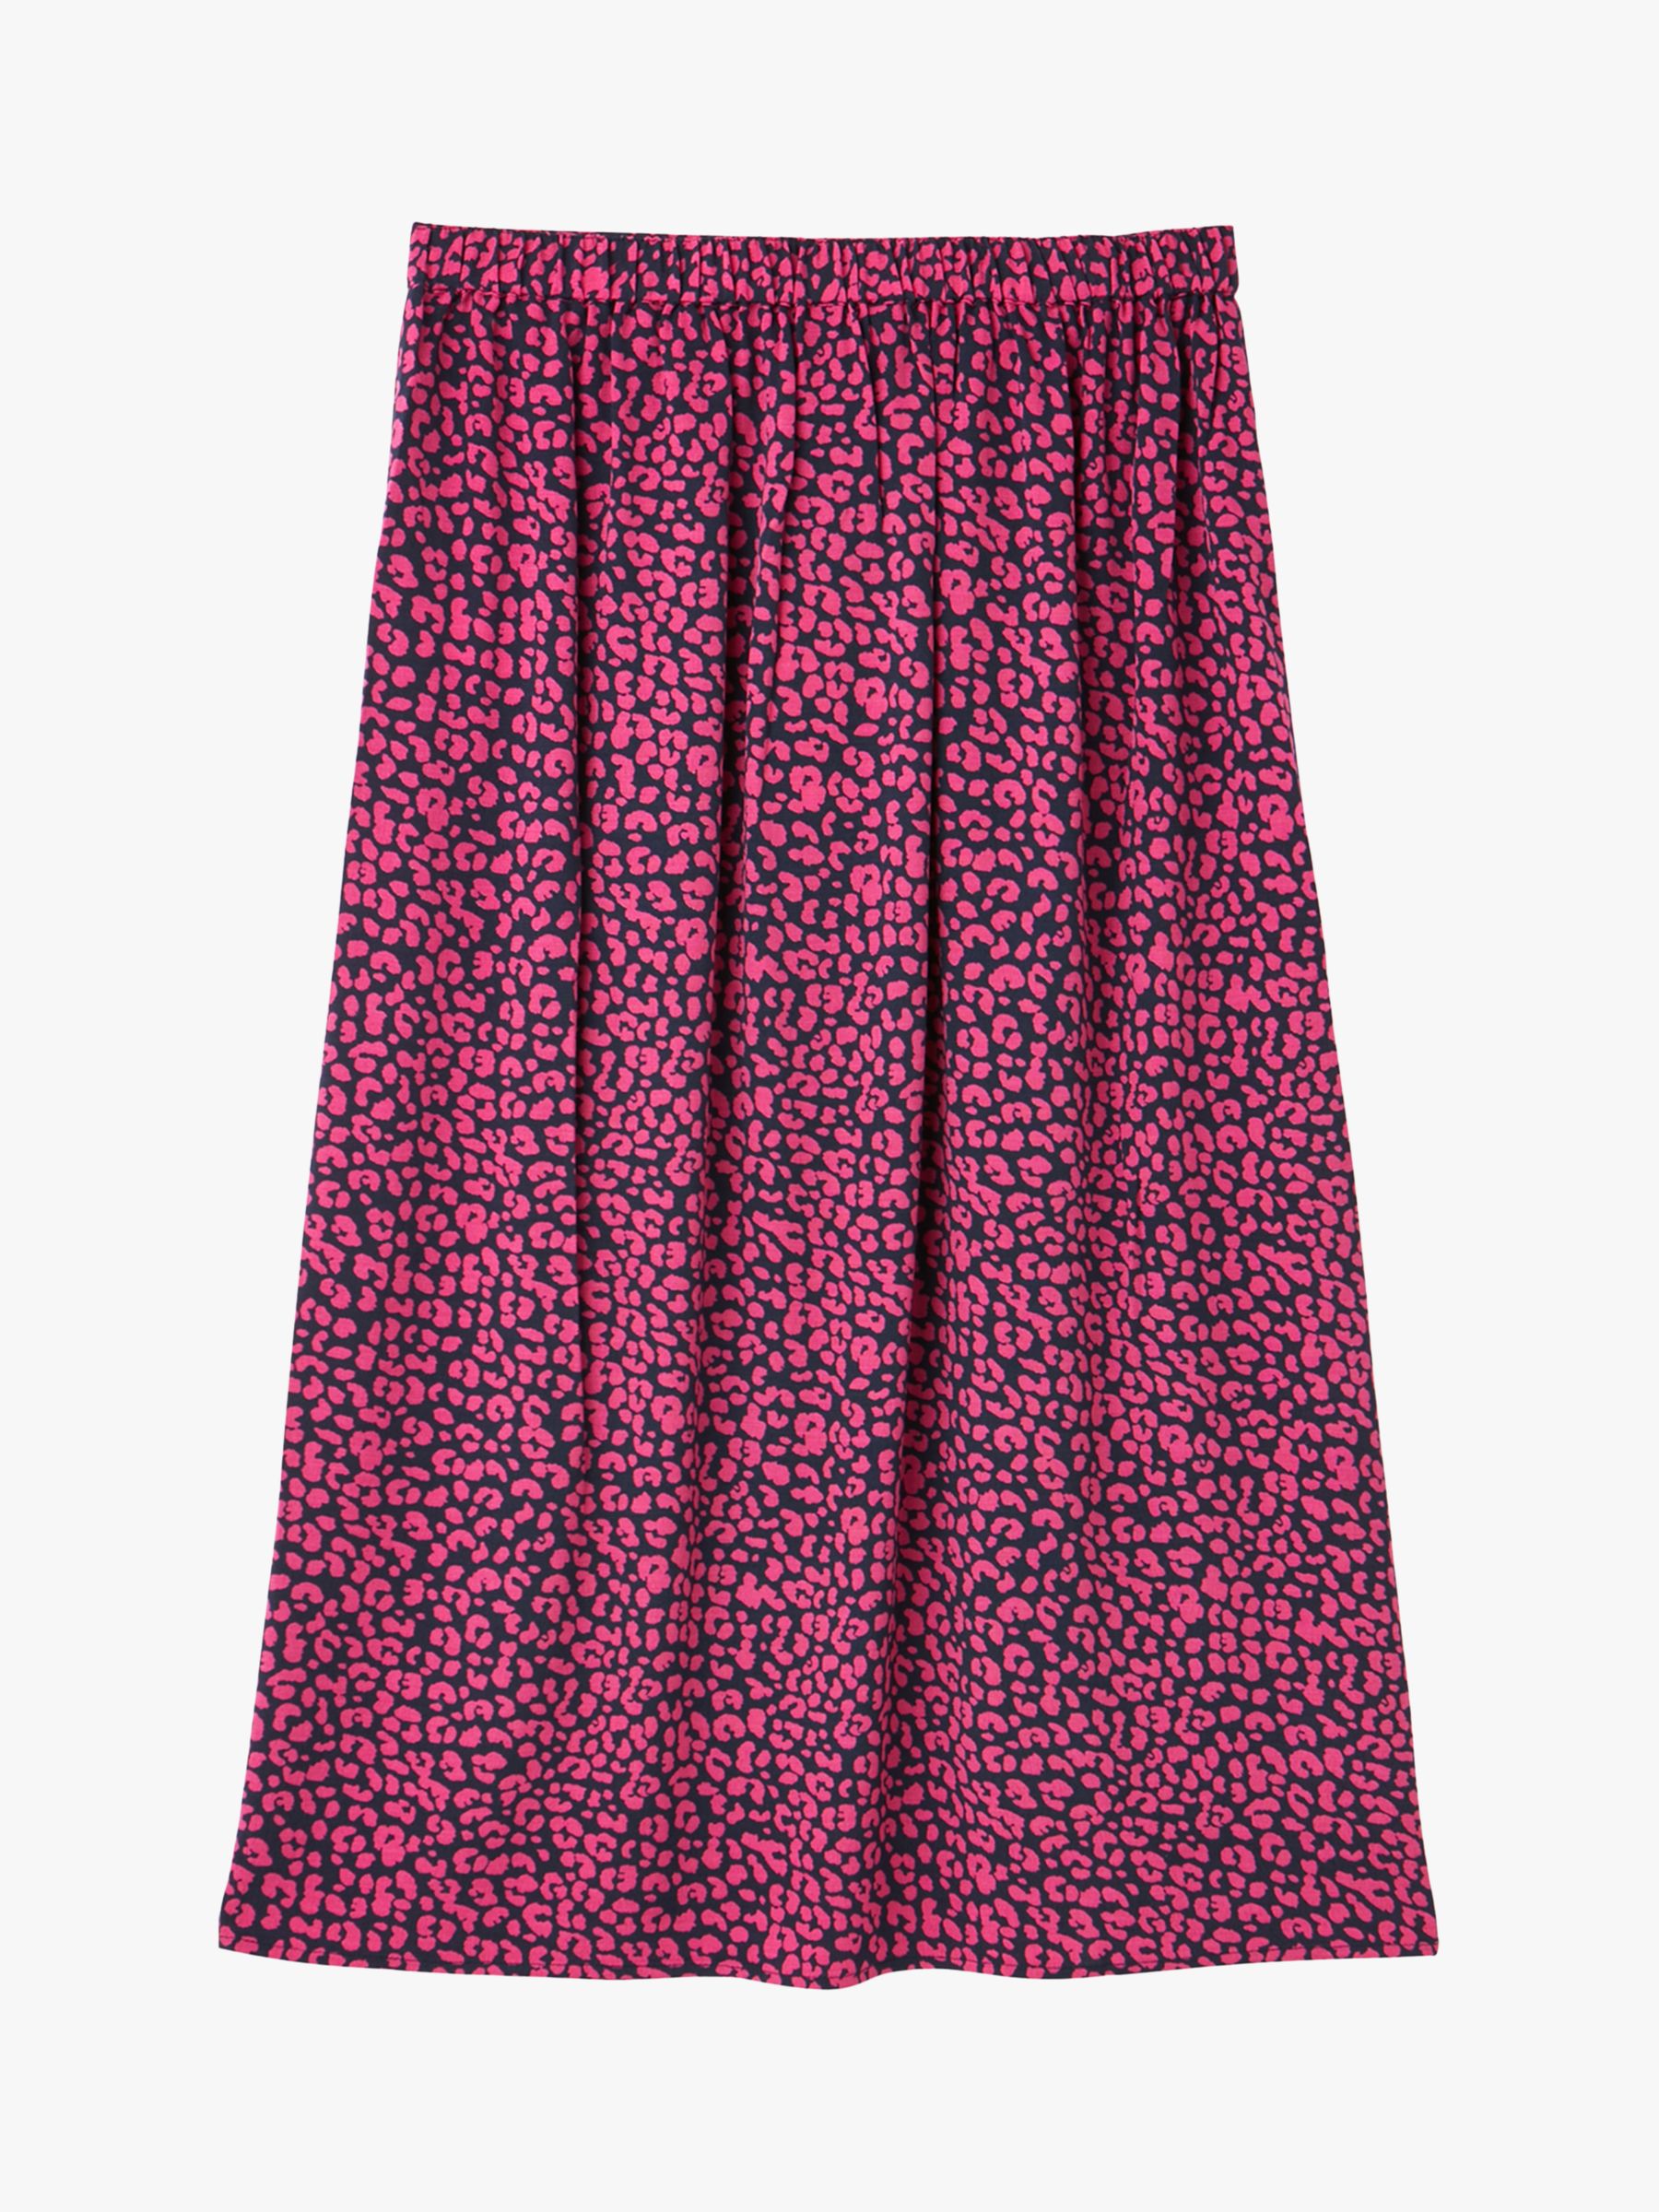 Joules Bea Split Skirt, Navy Leopard